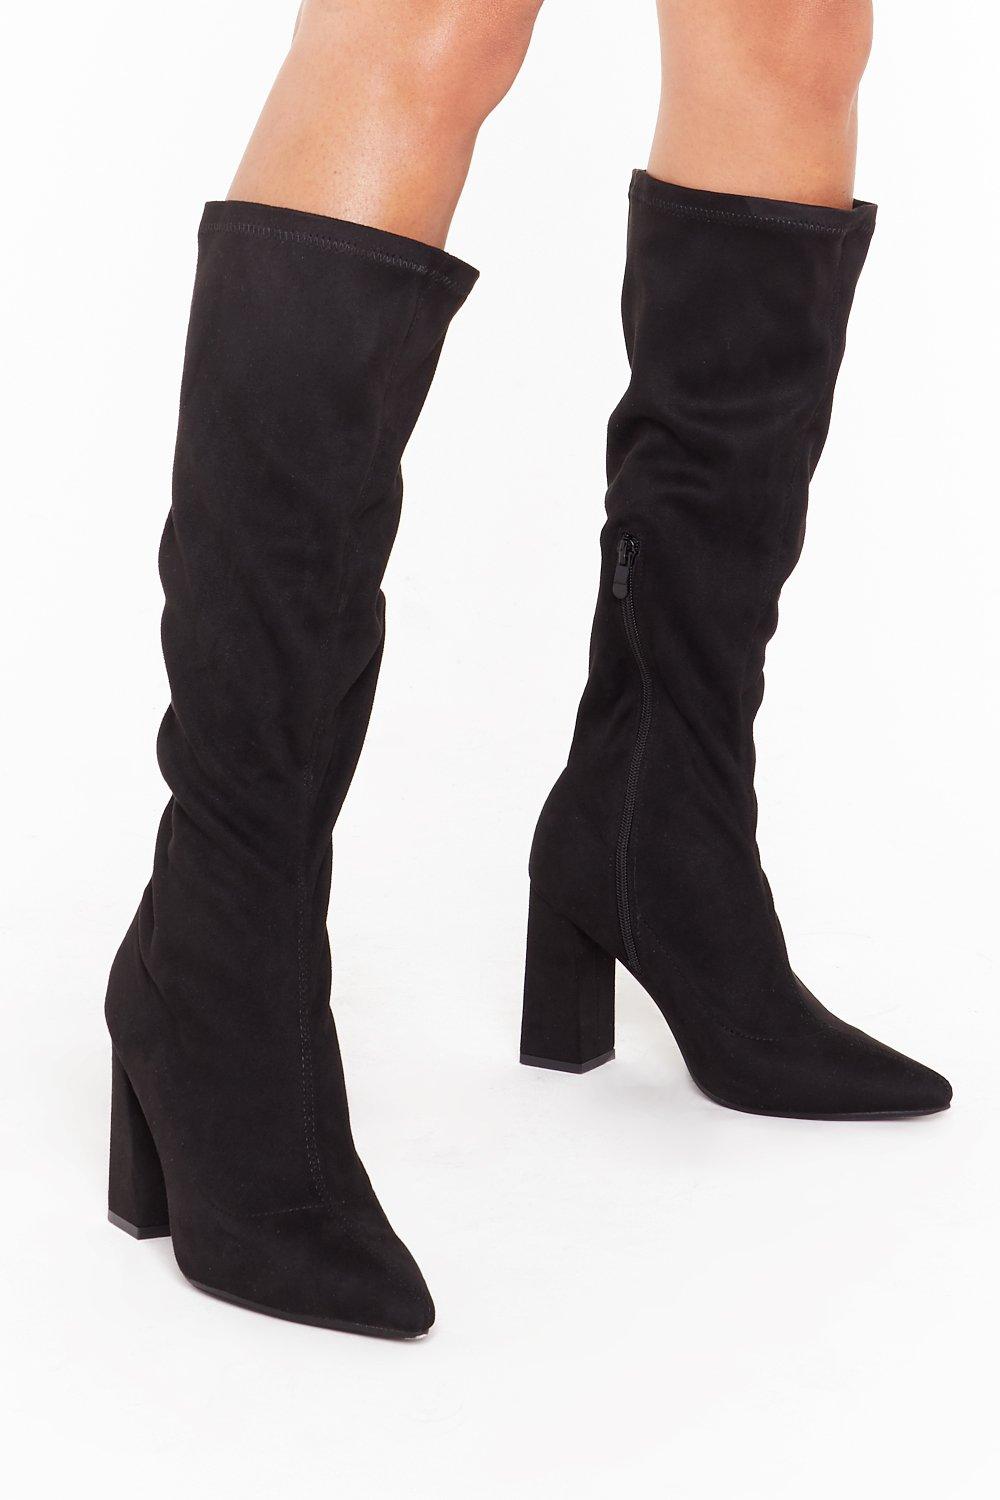 black suede knee high boots with heel